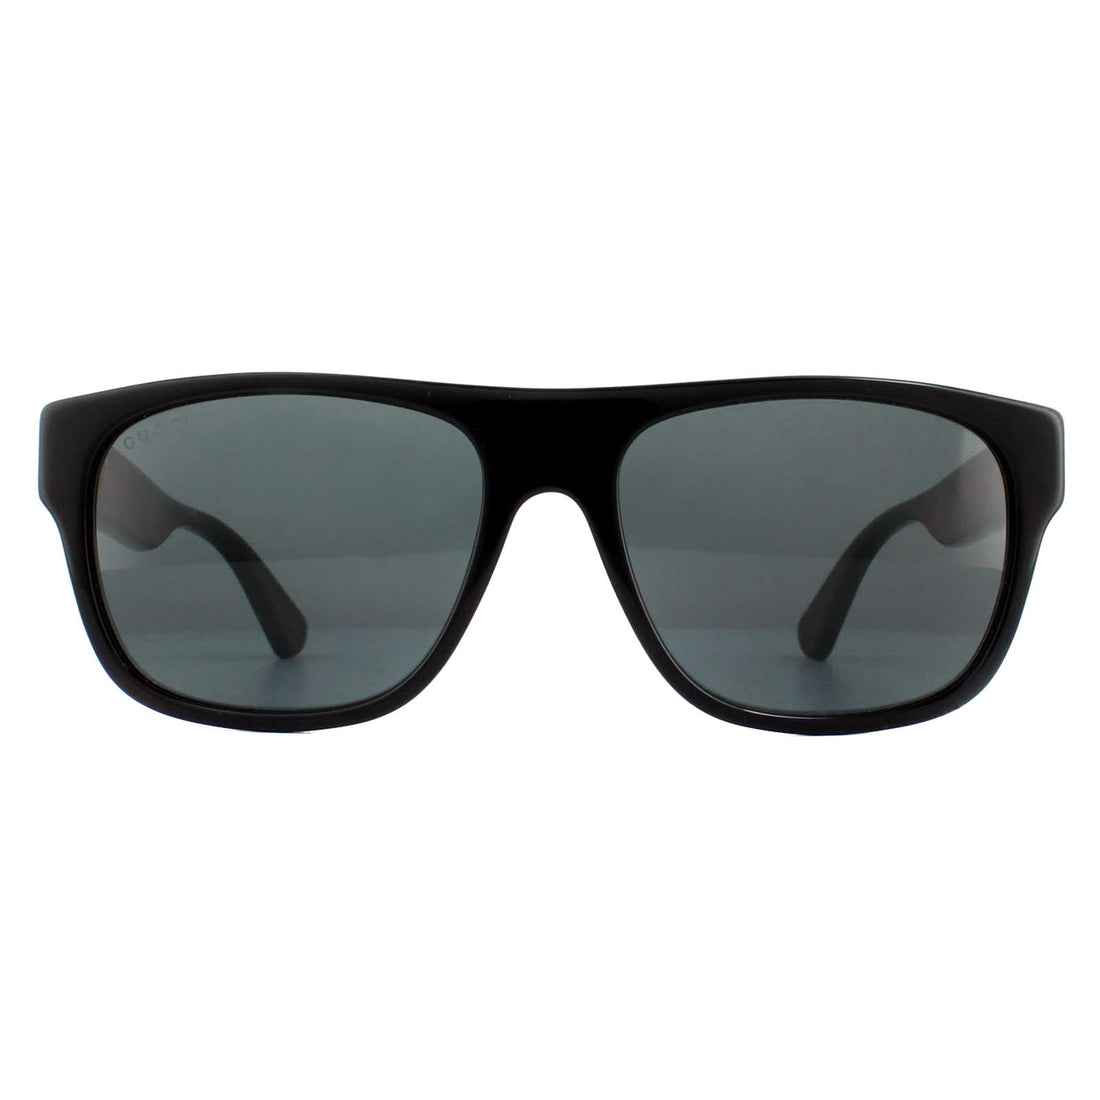 Gucci GG0341S Sunglasses Black Green Red / Grey